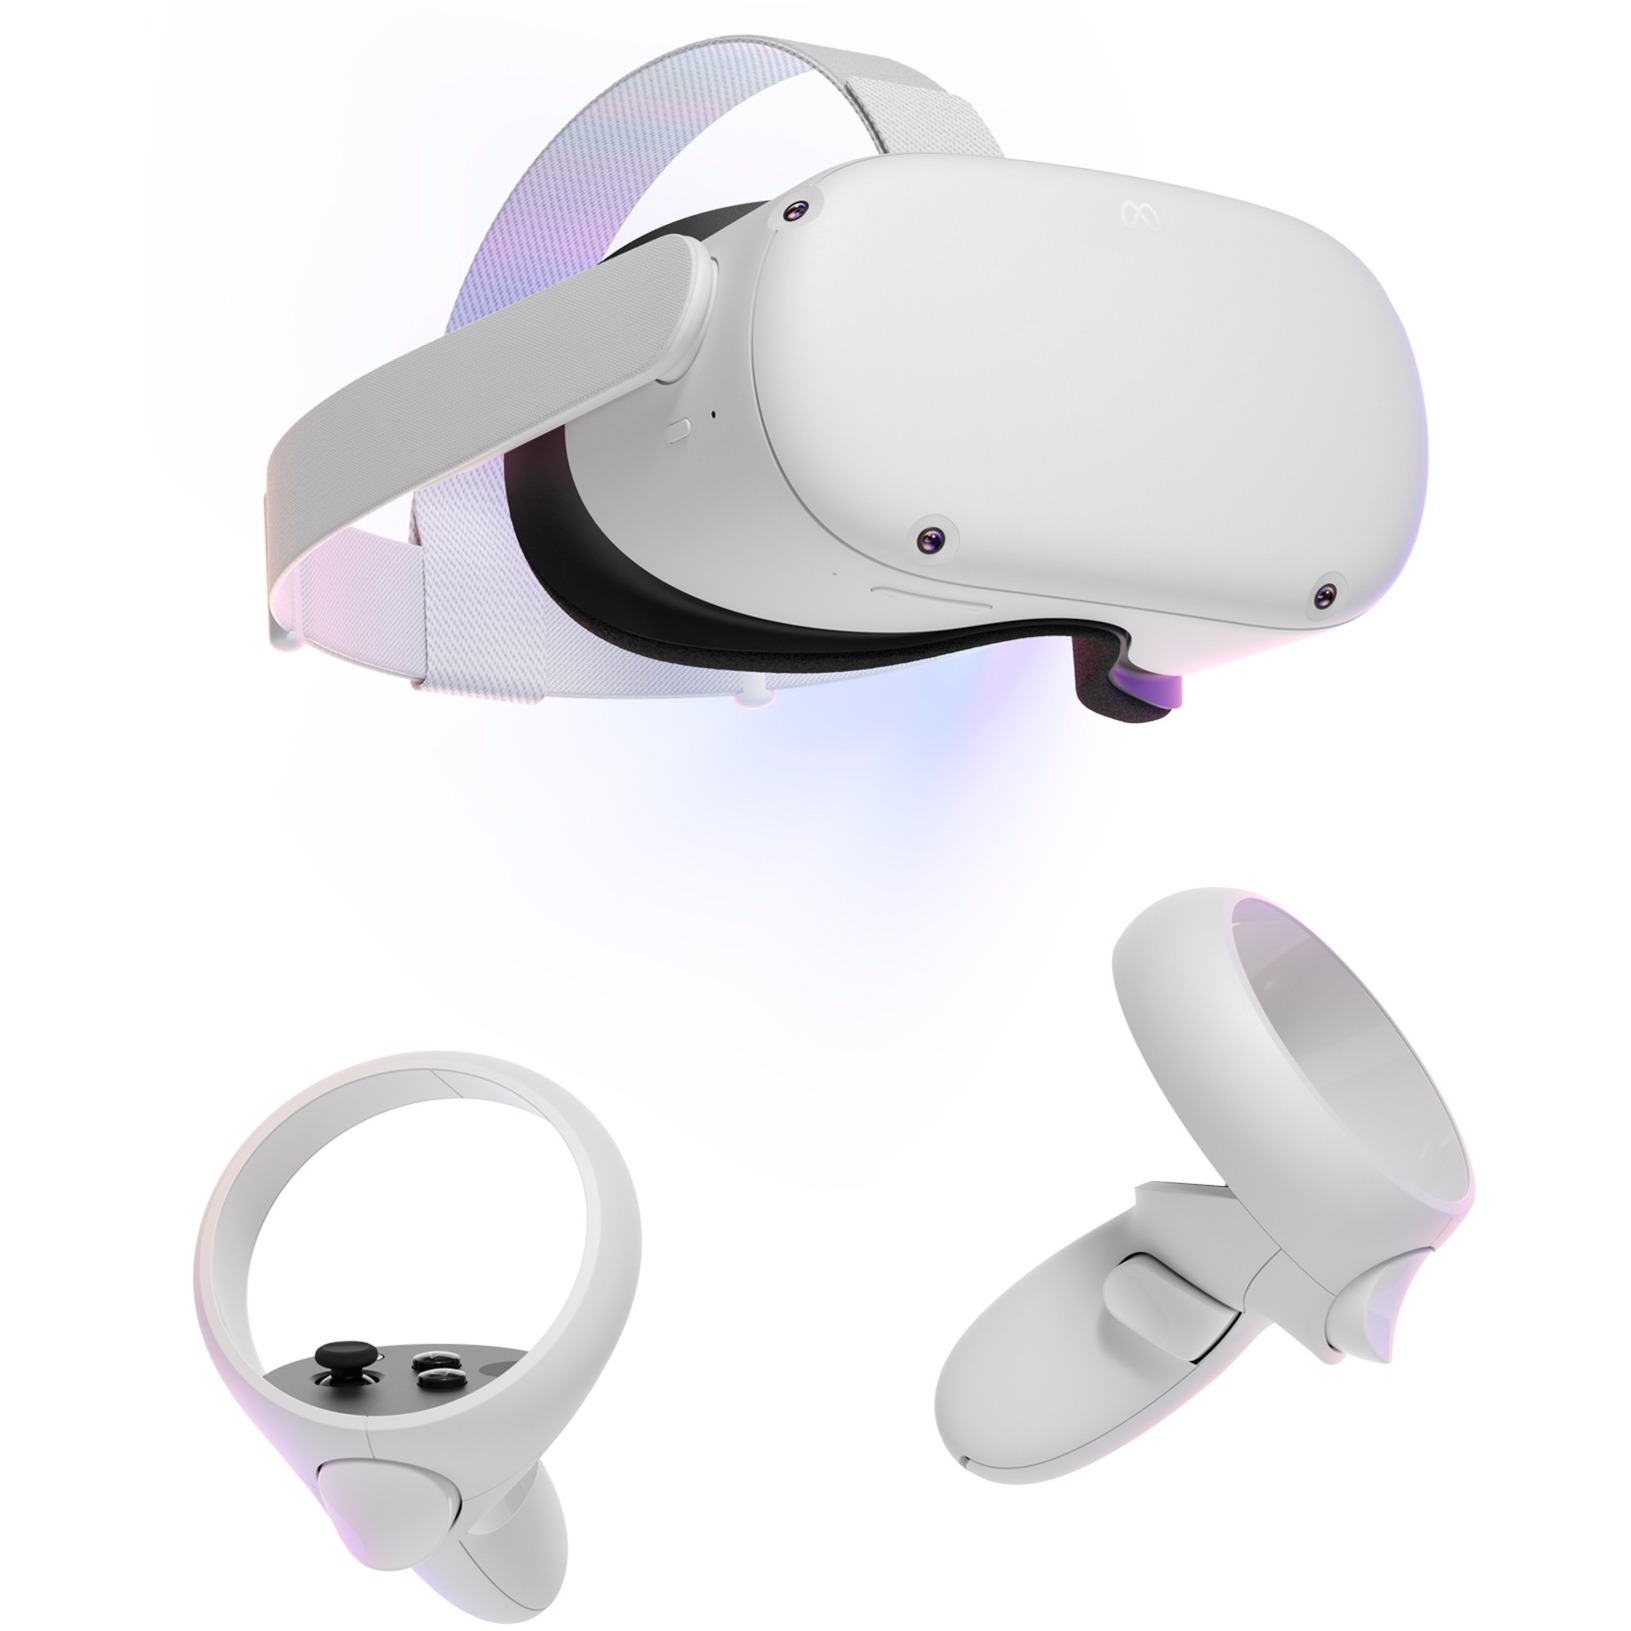 Image of Alternate - Quest 2 256GB, VR-Brille online einkaufen bei Alternate